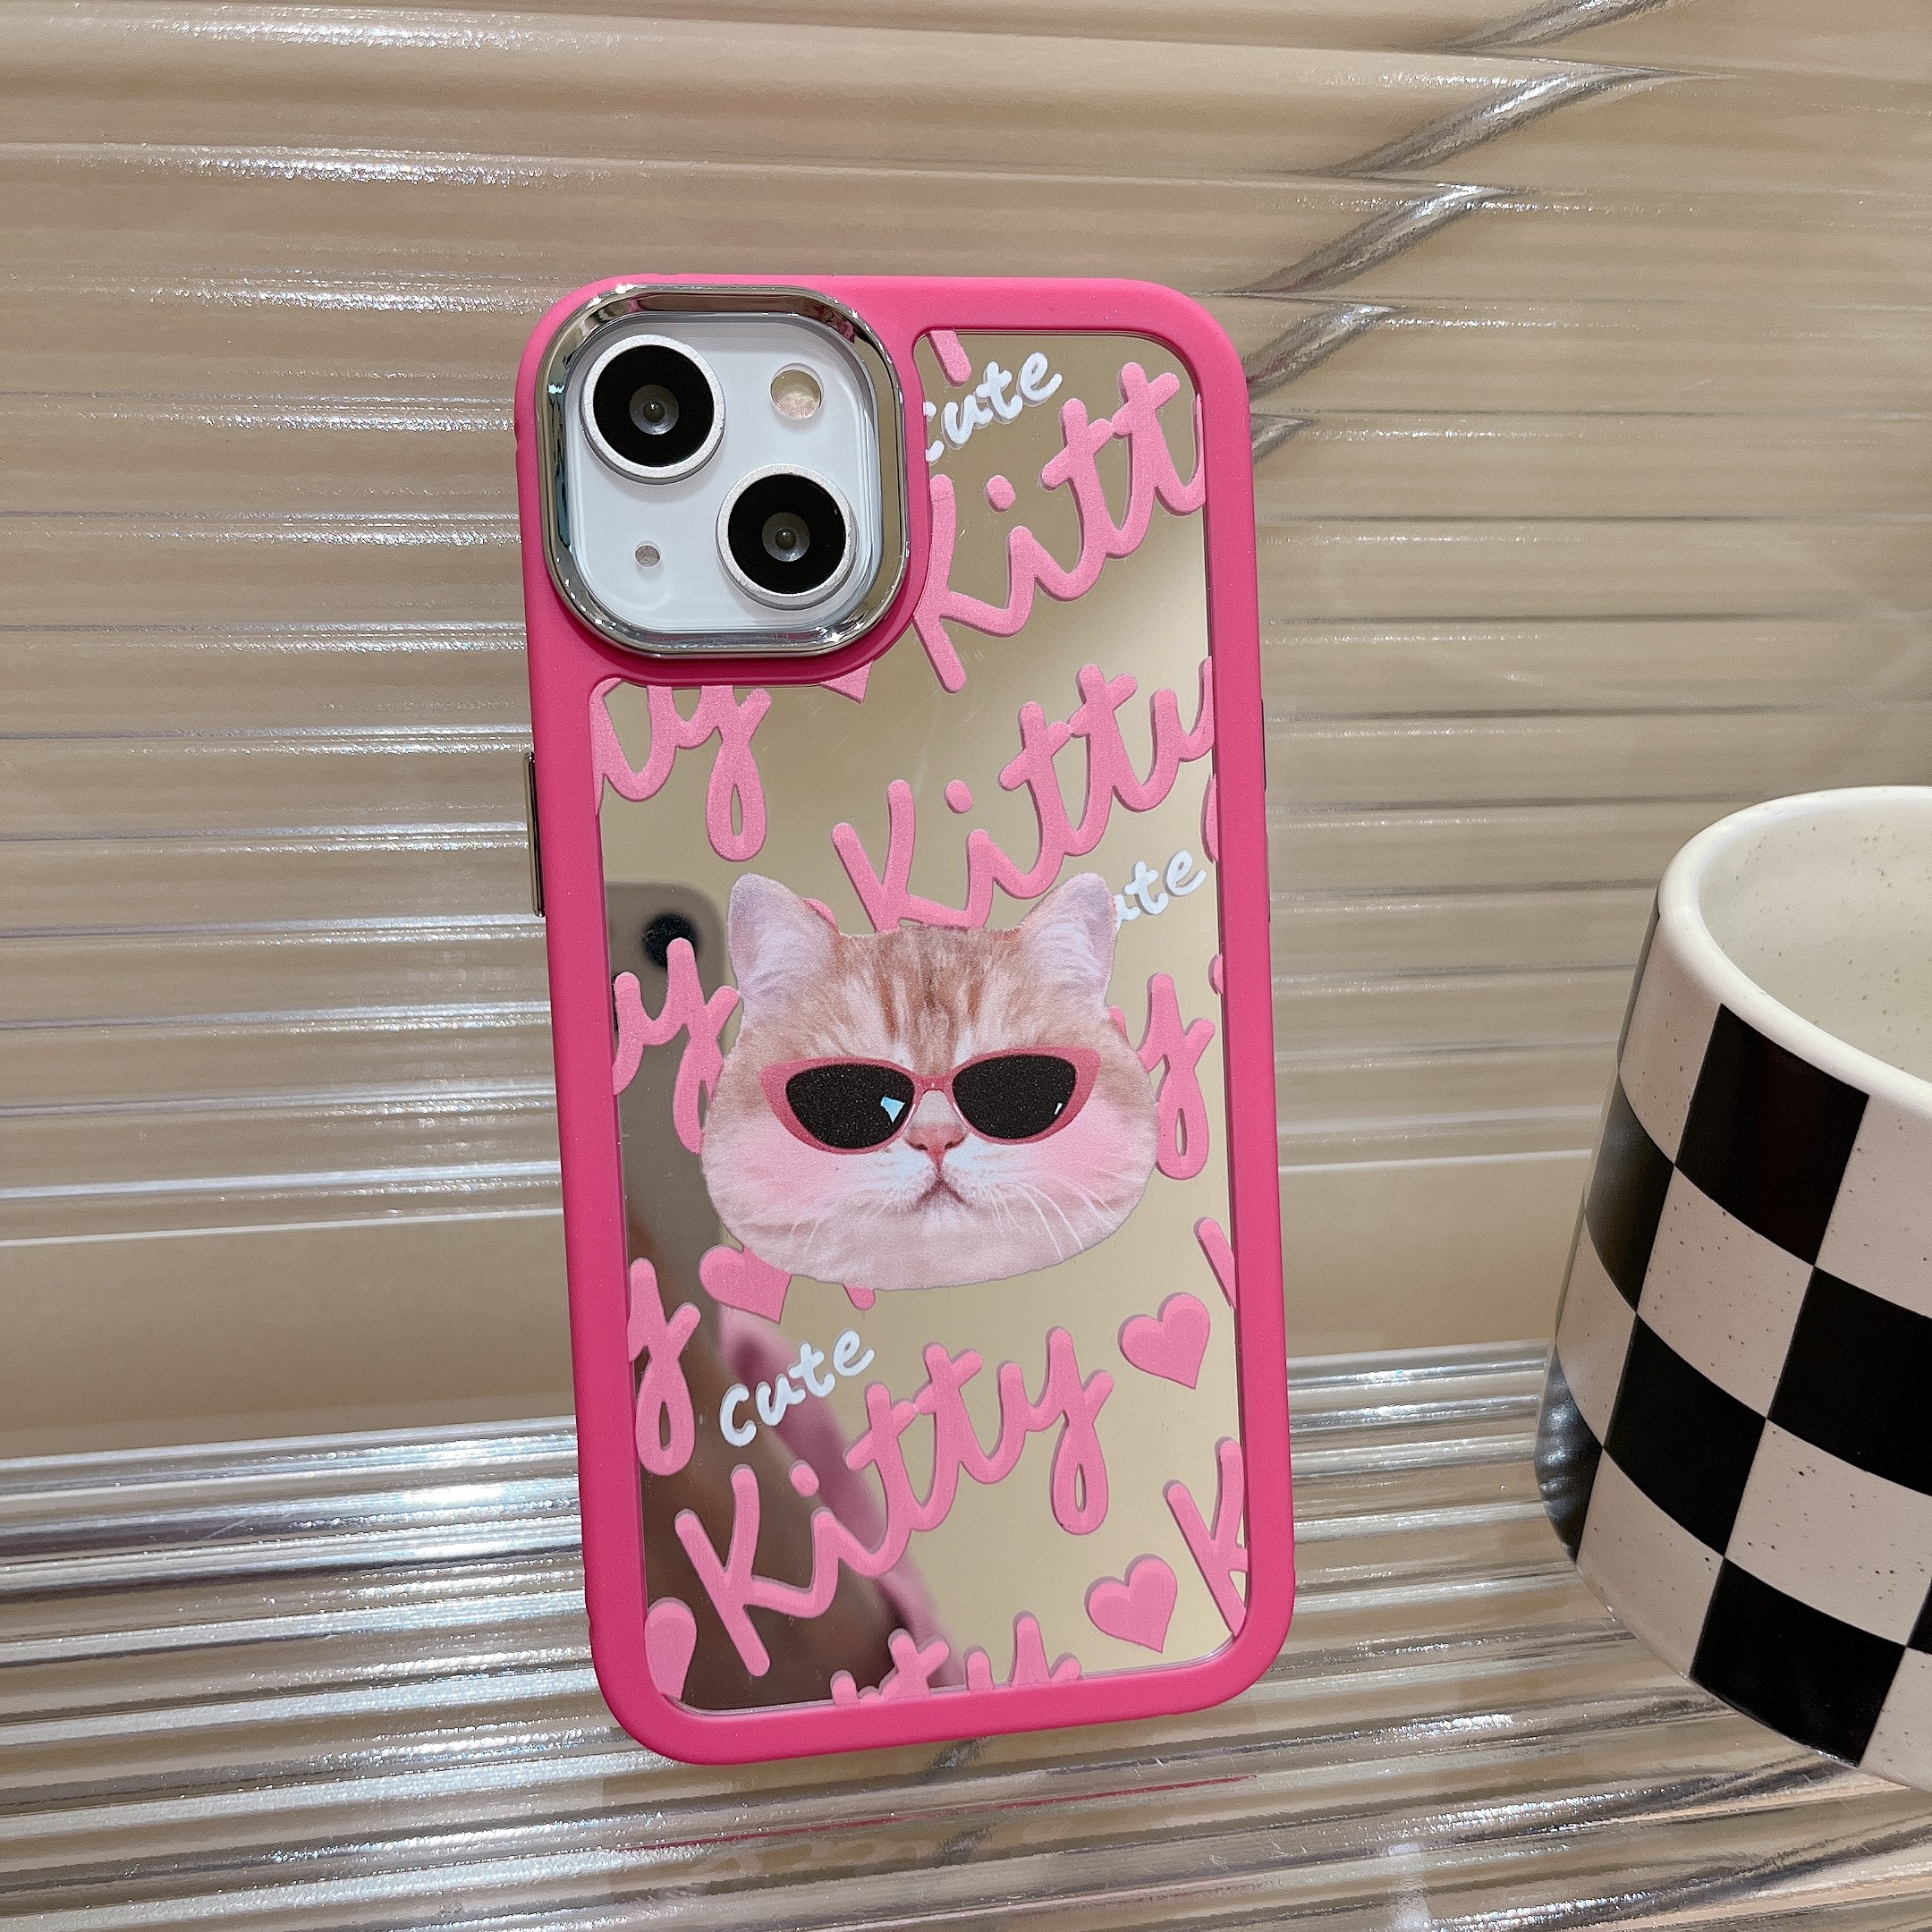 鏡面可愛粉色卡通貓咪手機保護殼